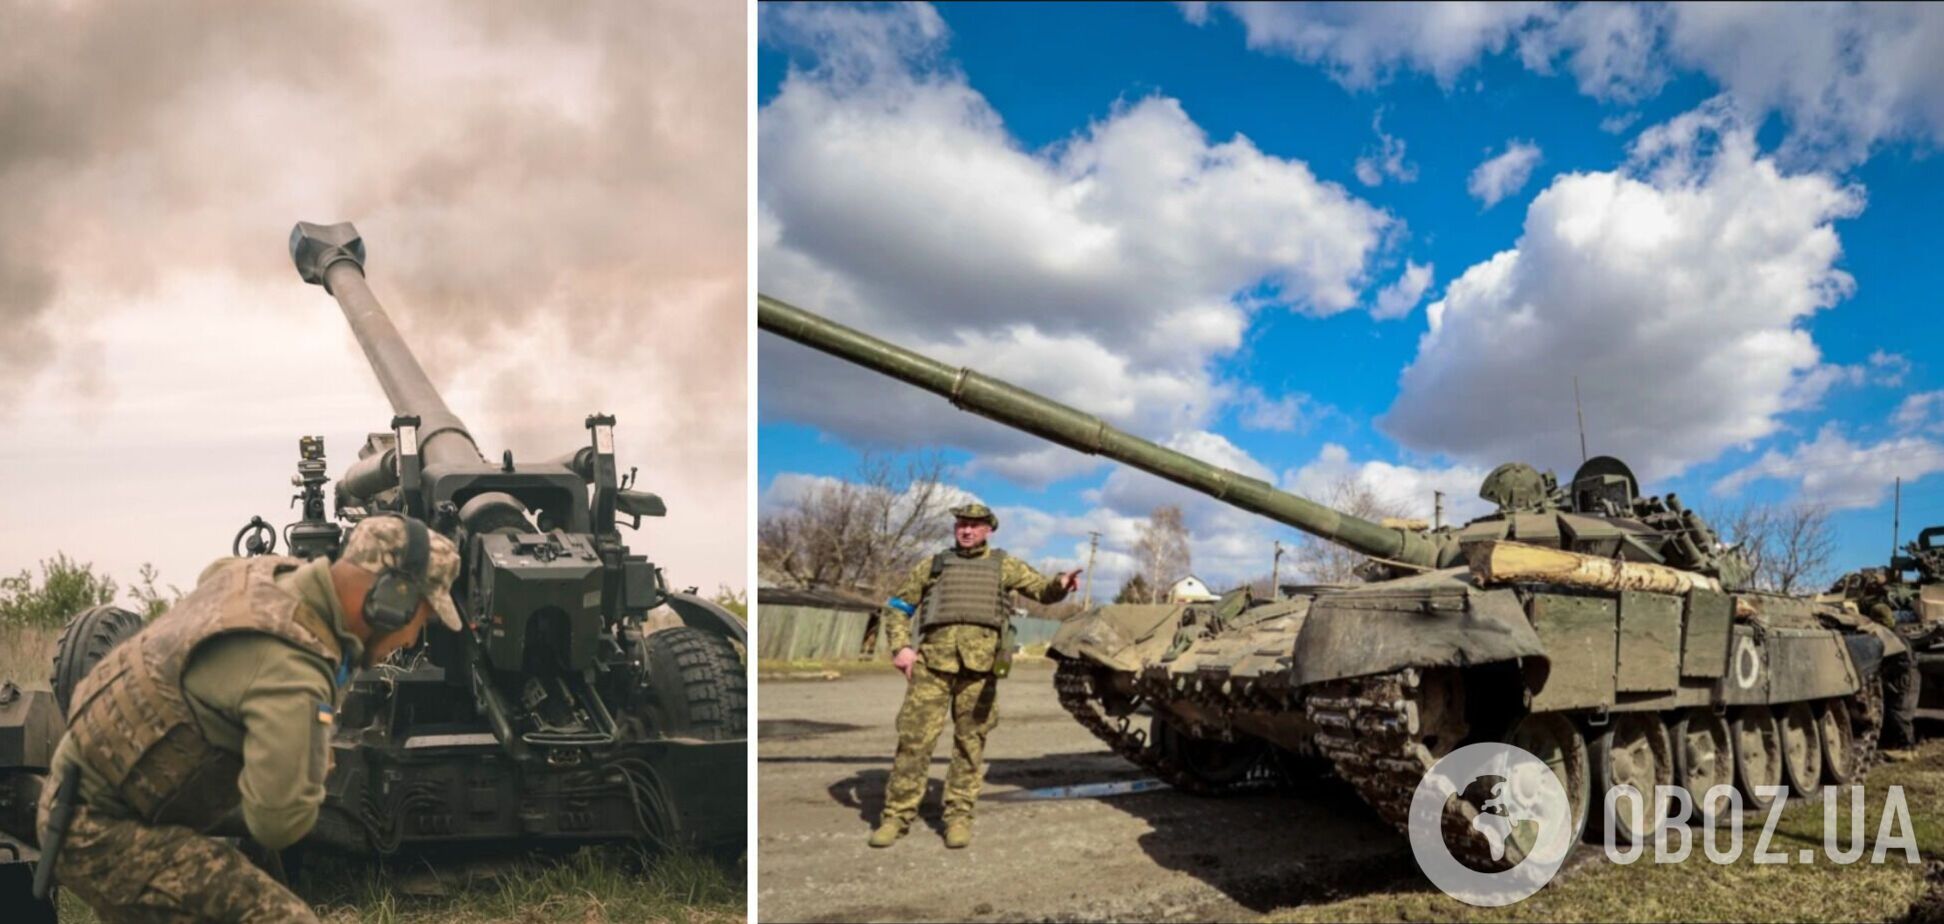 Защитники юга очистили украинскую землю от десятка оккупантов и отправили на металлолом вражескую технику